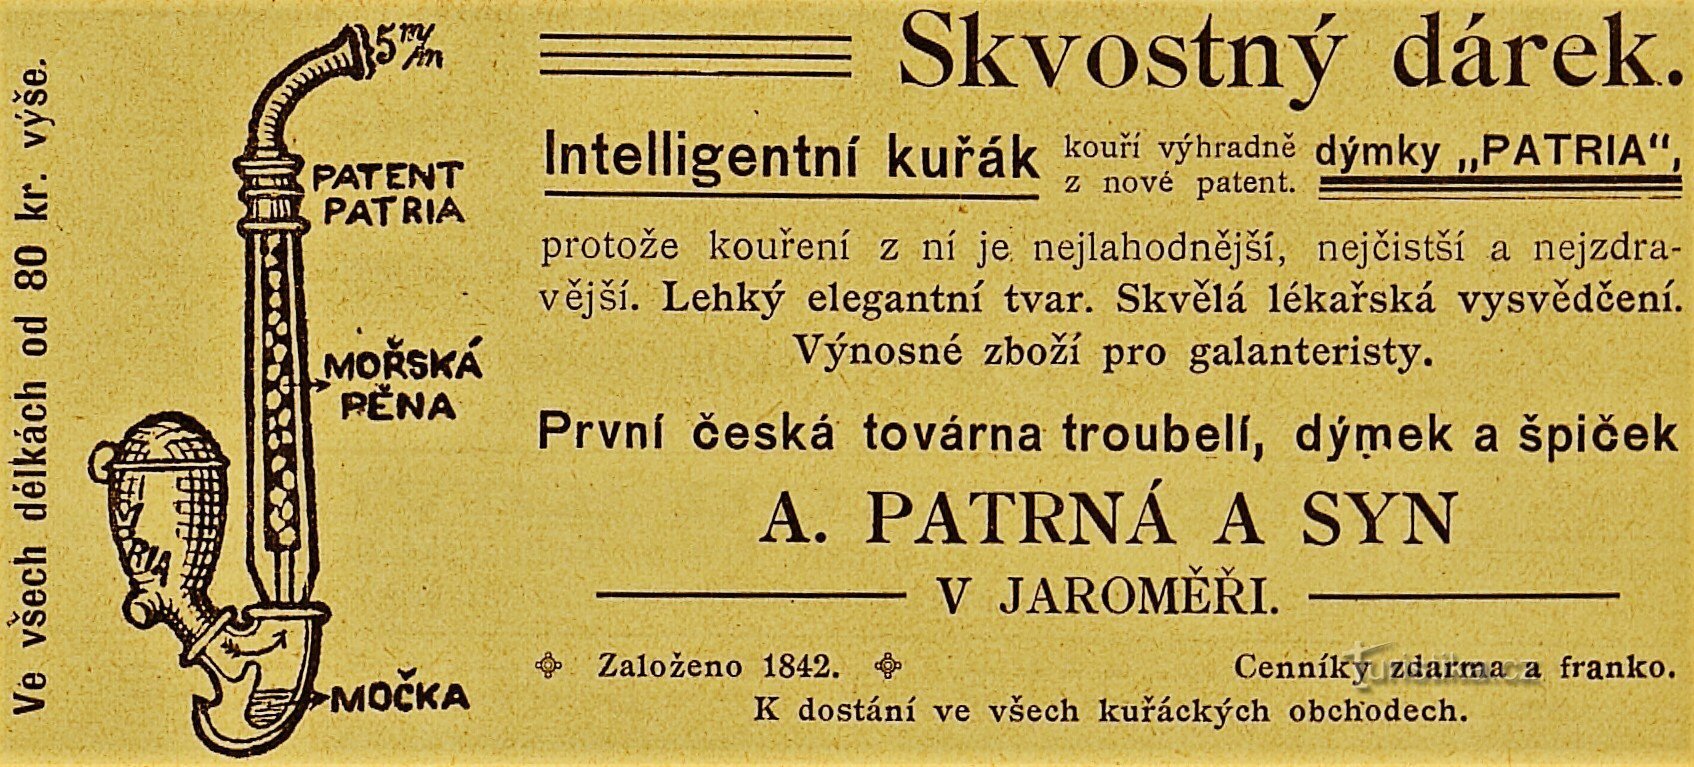 ヤロニェシュにある A. パトルナーとその息子の現代的な広告 (1901 年)